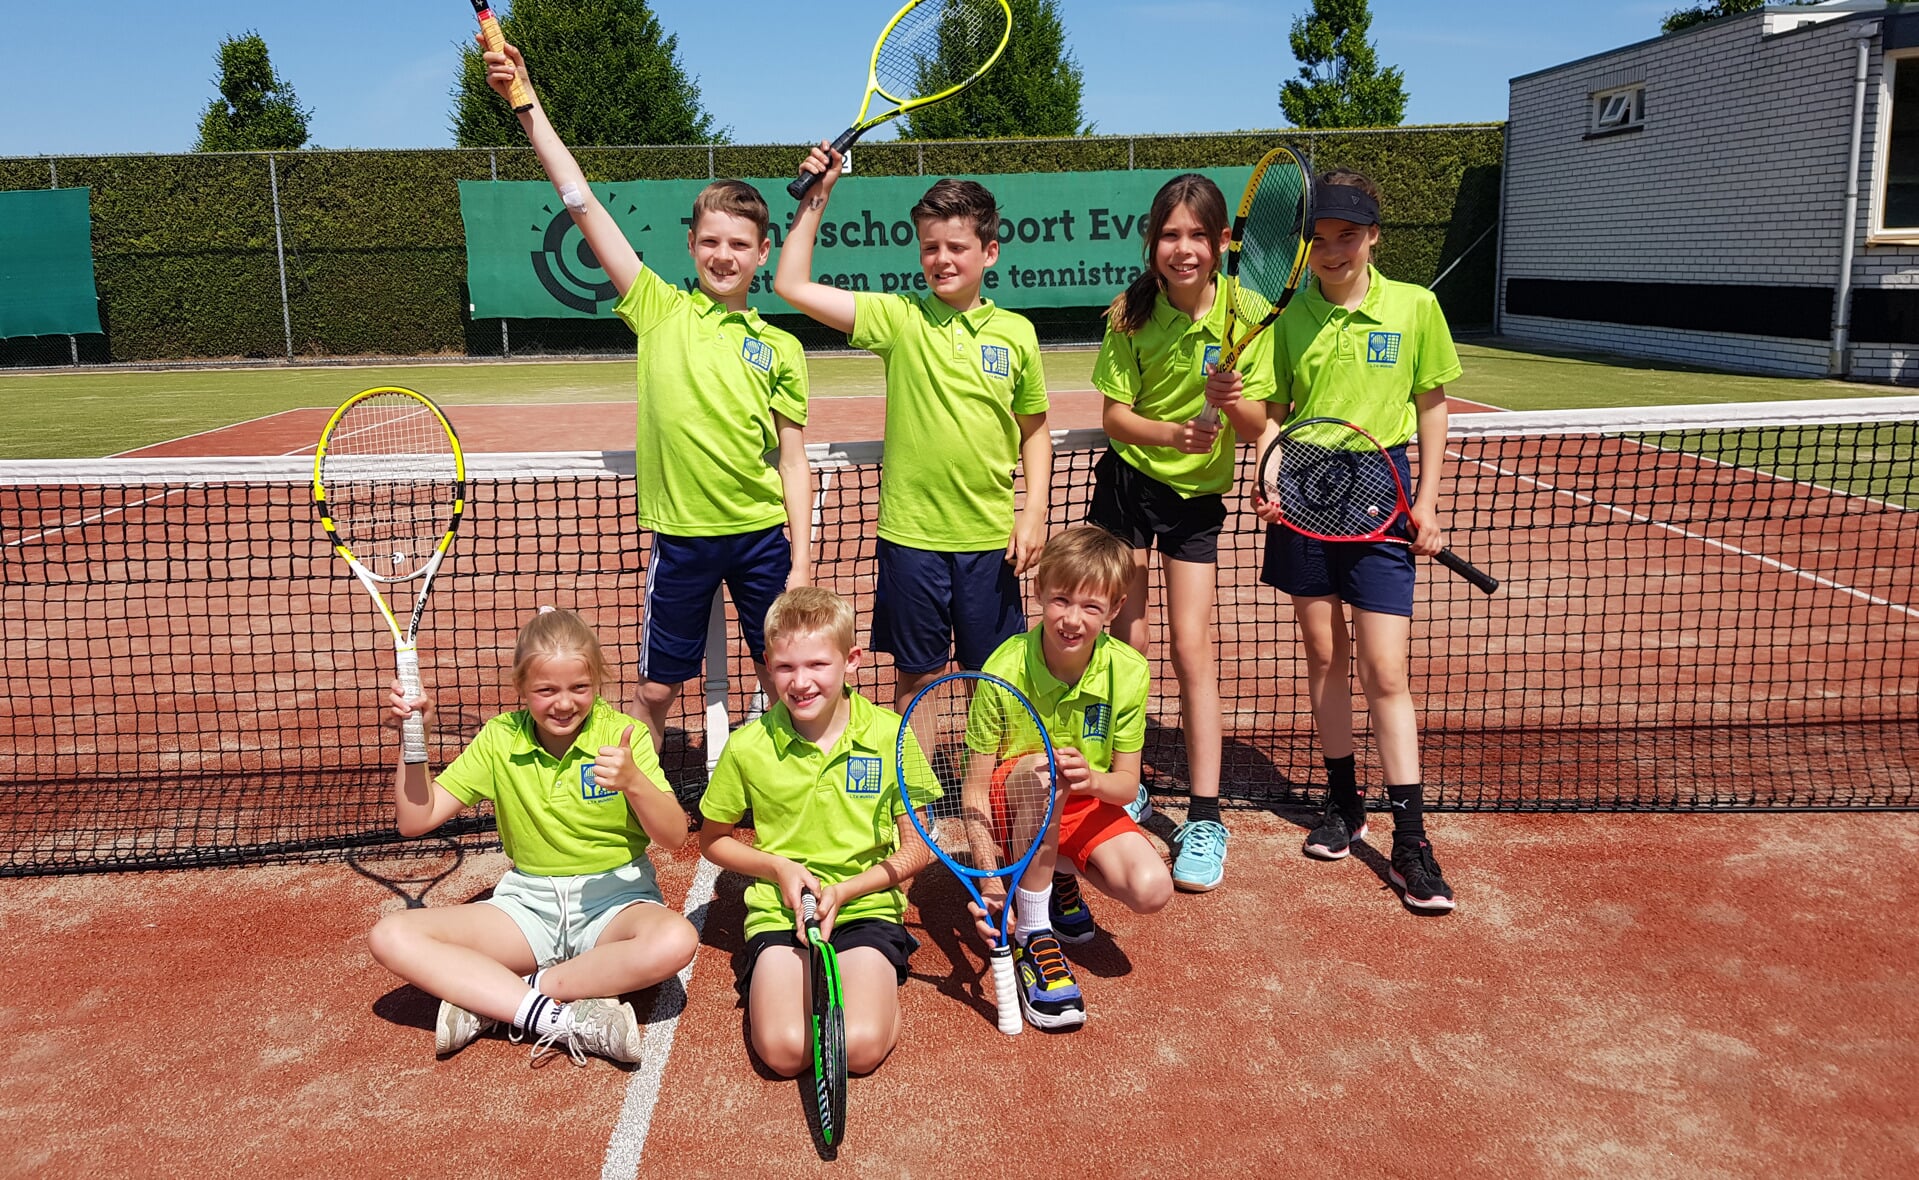 Team Oranje, zoals de tennisploeg van LTV Munsel voor jeugd tussen 7 en 10 jaar heet, haalden afgelopen weekeinde op grandioze wijze het kampioenschap binnen.